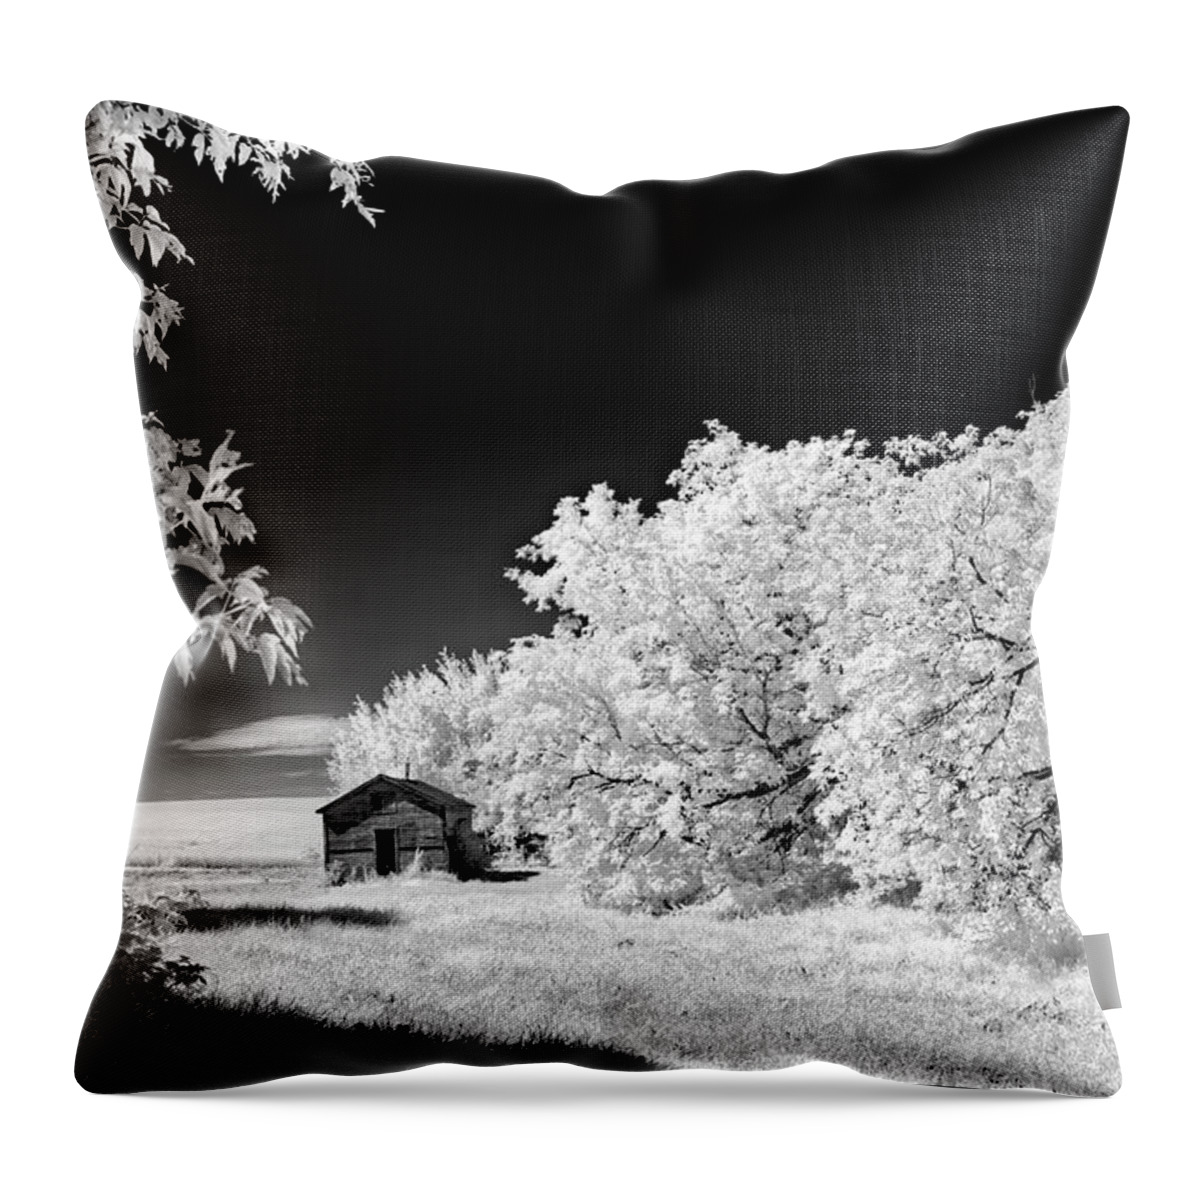 Infrared Throw Pillow featuring the photograph Under a Dark Sky by Dan Jurak